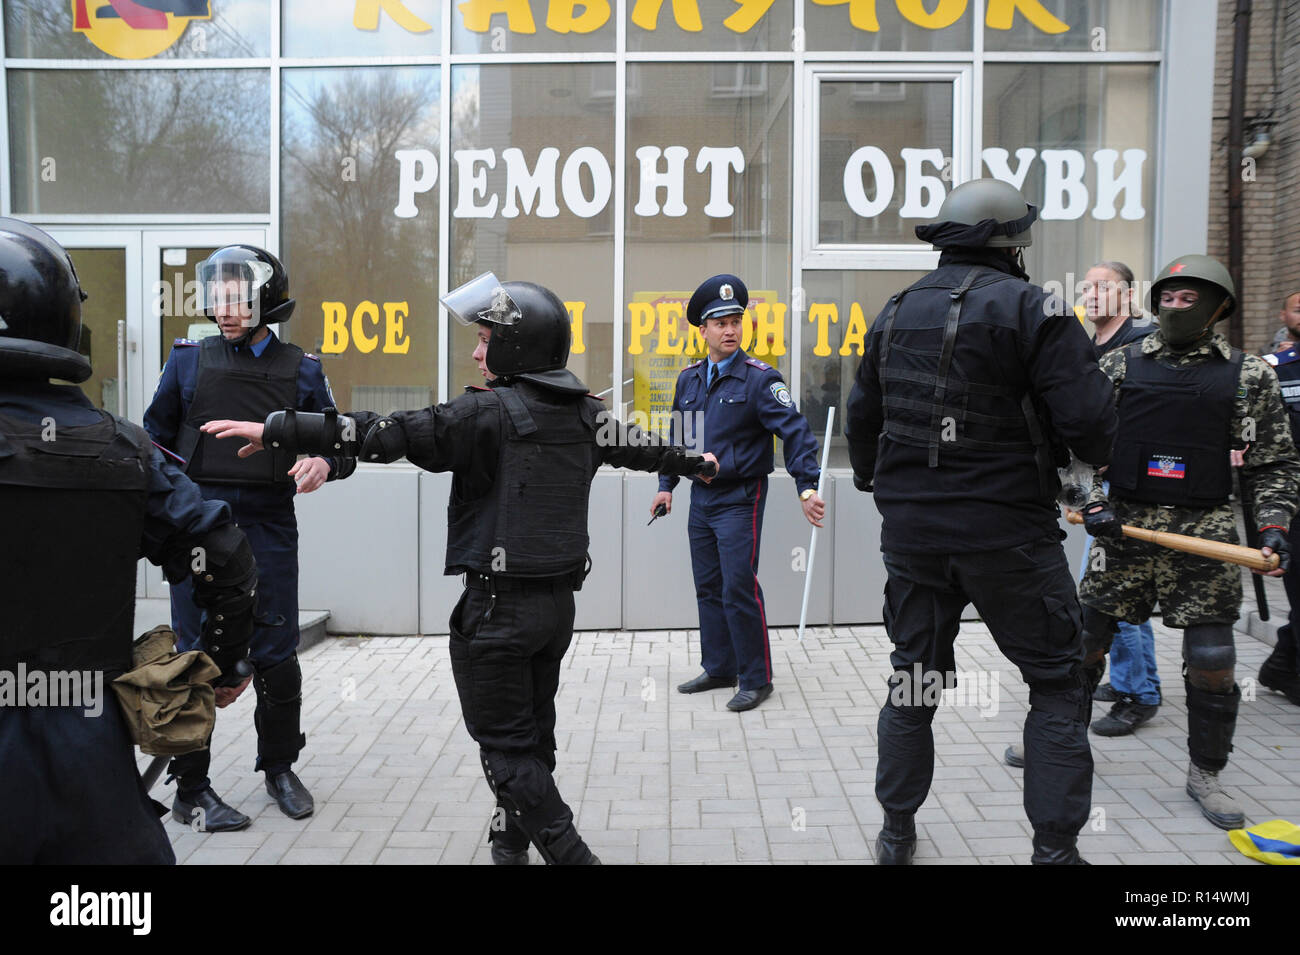 April 28, 2014 - Donezk, Ukraine: Ukrainische Bereitschaftspolizei bewegen sich in einer friedlichen Demonstration der Ukrainer für die Einheit ihres Landes zu schützen. Trotz Polizeischutz, einer Gruppe von pro-russischen Separatisten heftig angegriffen und verteilte die friedlichen Demonstranten. Die pro-russische separatistische Gruppe, meist Jugendliche in Balaclava, dann ihre Aktionen gefeiert durch schreien Sie hatten zertrümmerte 'Faschisten'. Une Manifestation pacifique en faveur de l'unite de l'Ukraine Donetsk est brutalement dispersee Gleichheit des Gruppen separatistes pro-Russes armes de Schlagstöcke et, pour Schneckaufkommen, d'armes Blanc Stockfoto